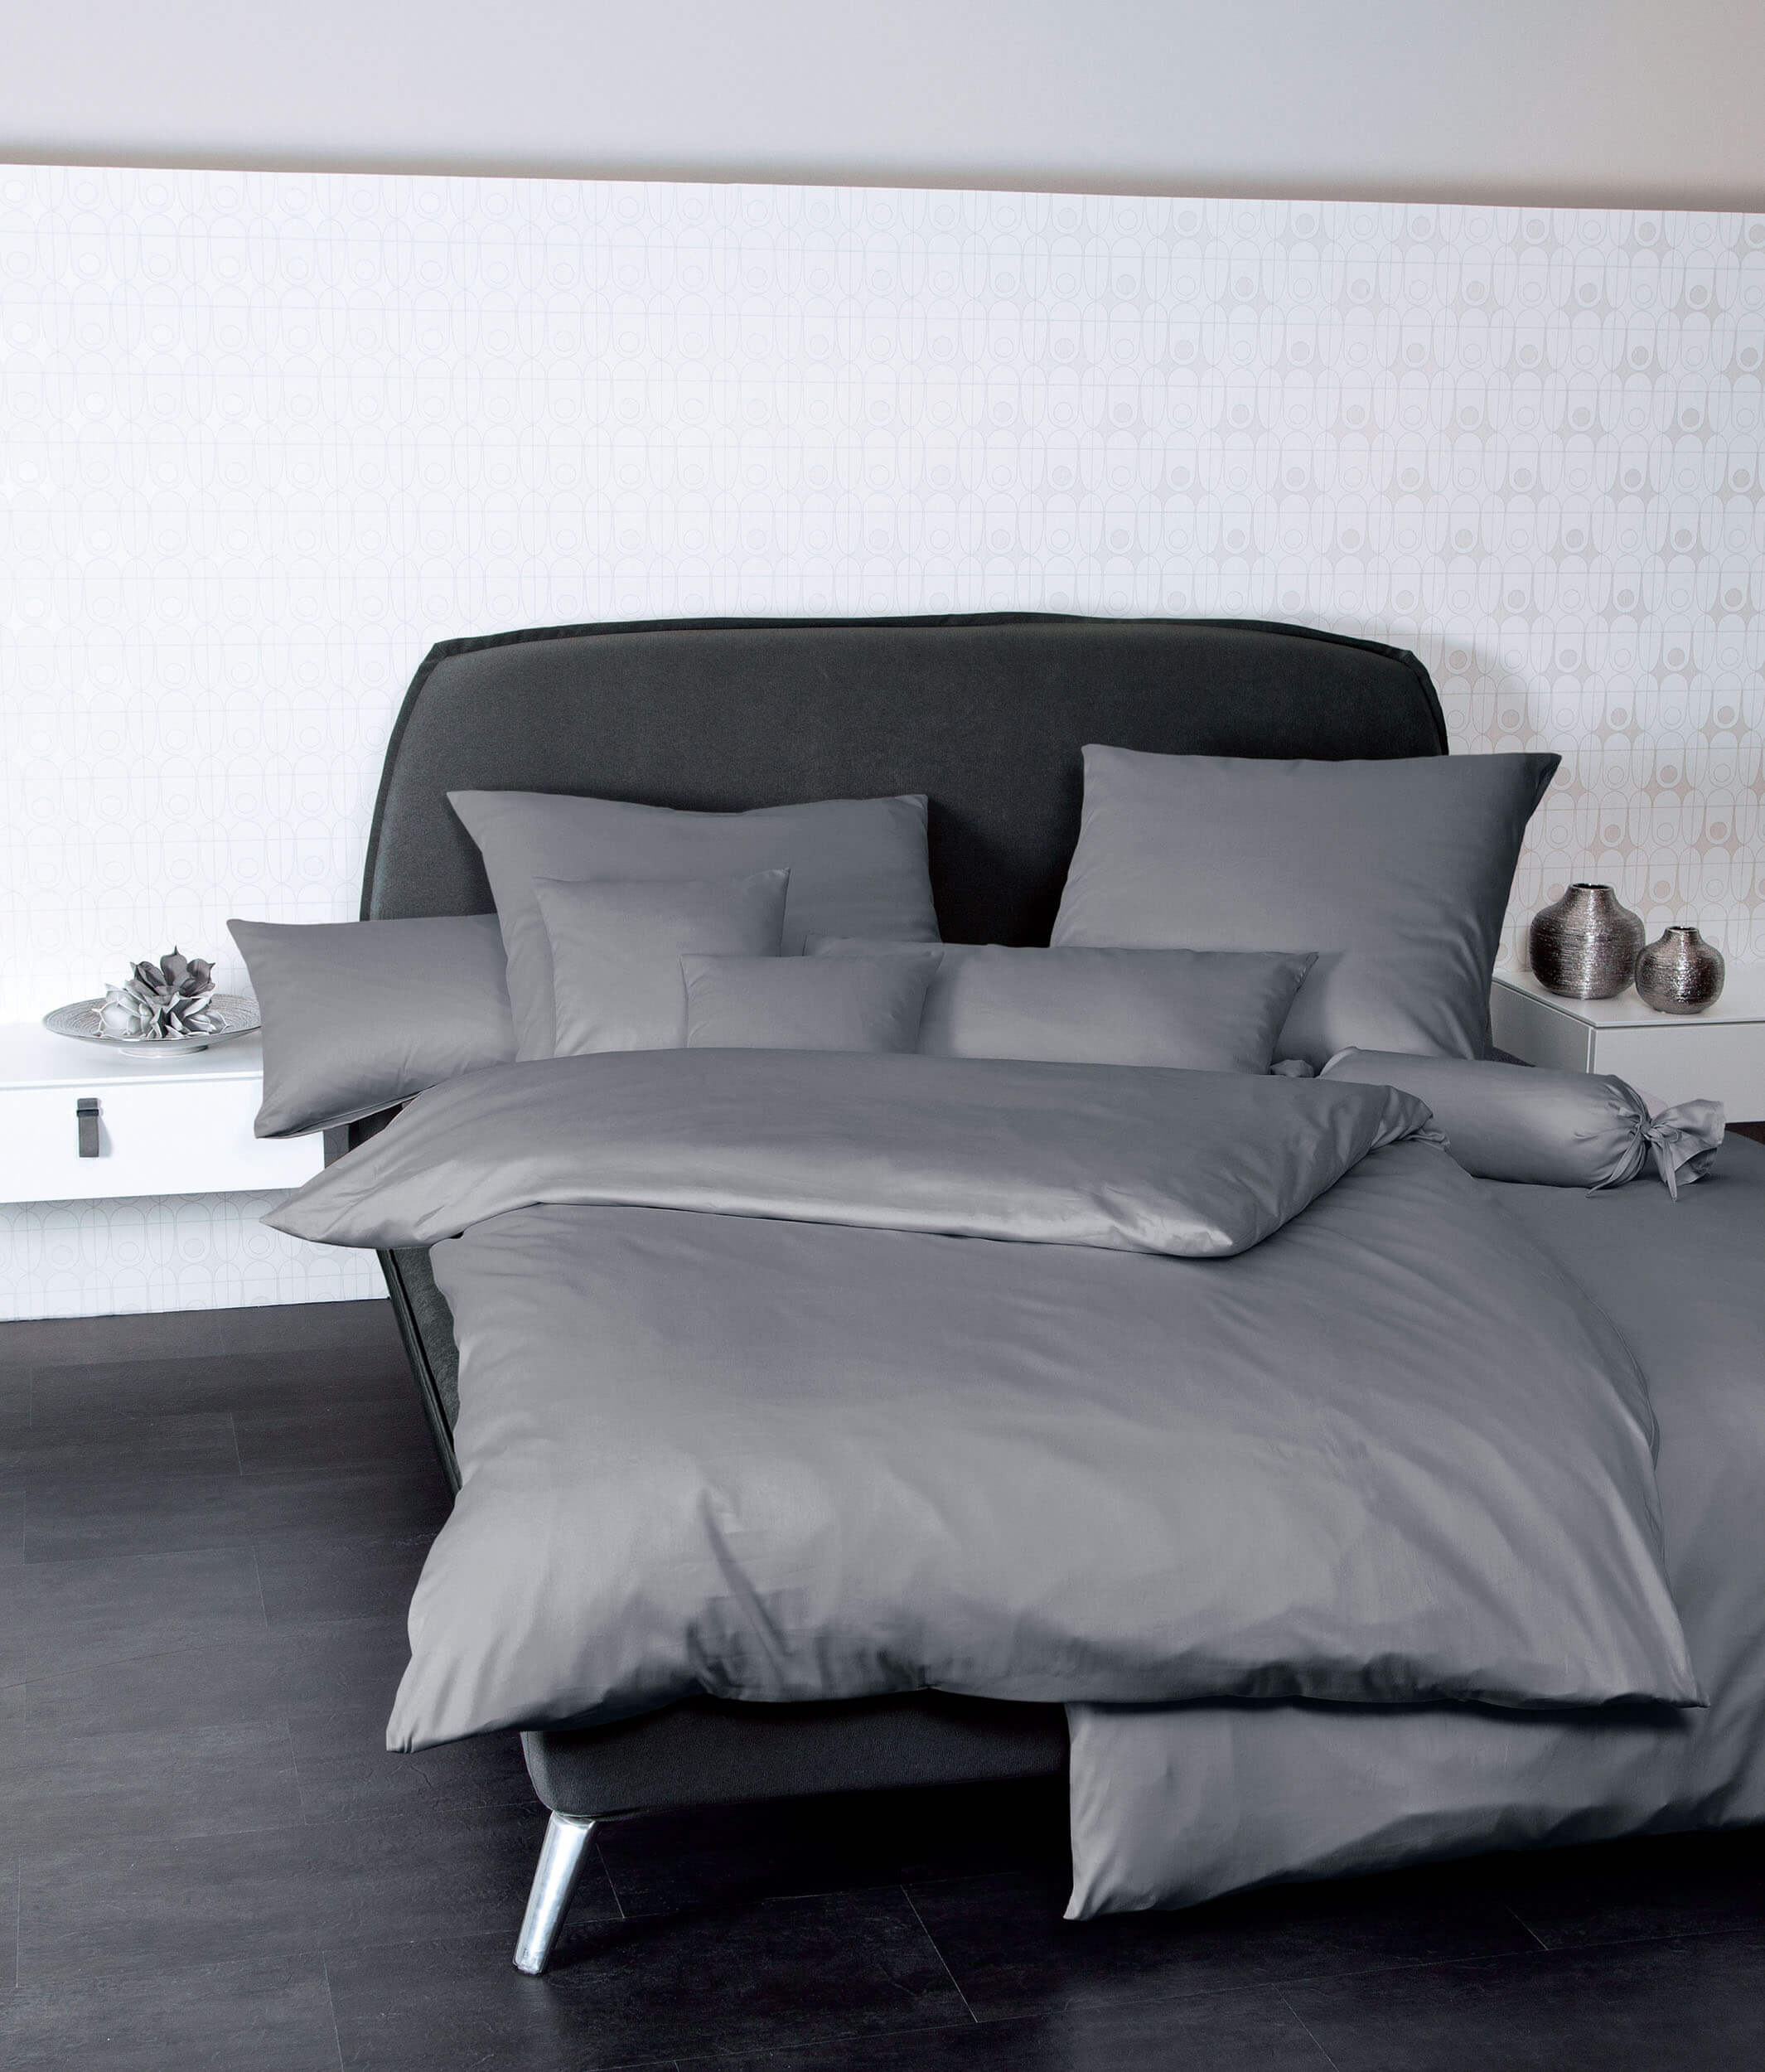 Немецкое постельное белье Colors Graphit ☞ Размер пододеяльника: 200 x 220 см ☞ Размер простыни: Без простыни ☞ Размер наволочек: 50 x 70 см (2 шт.)